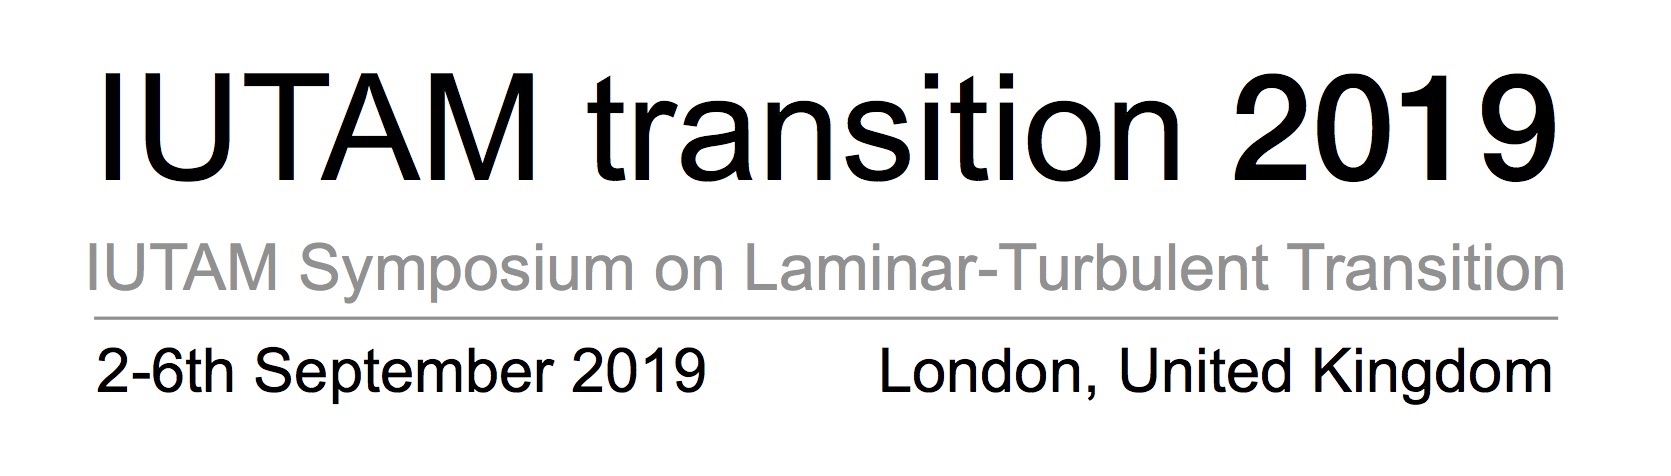 IUTAM Transition 2019 logo